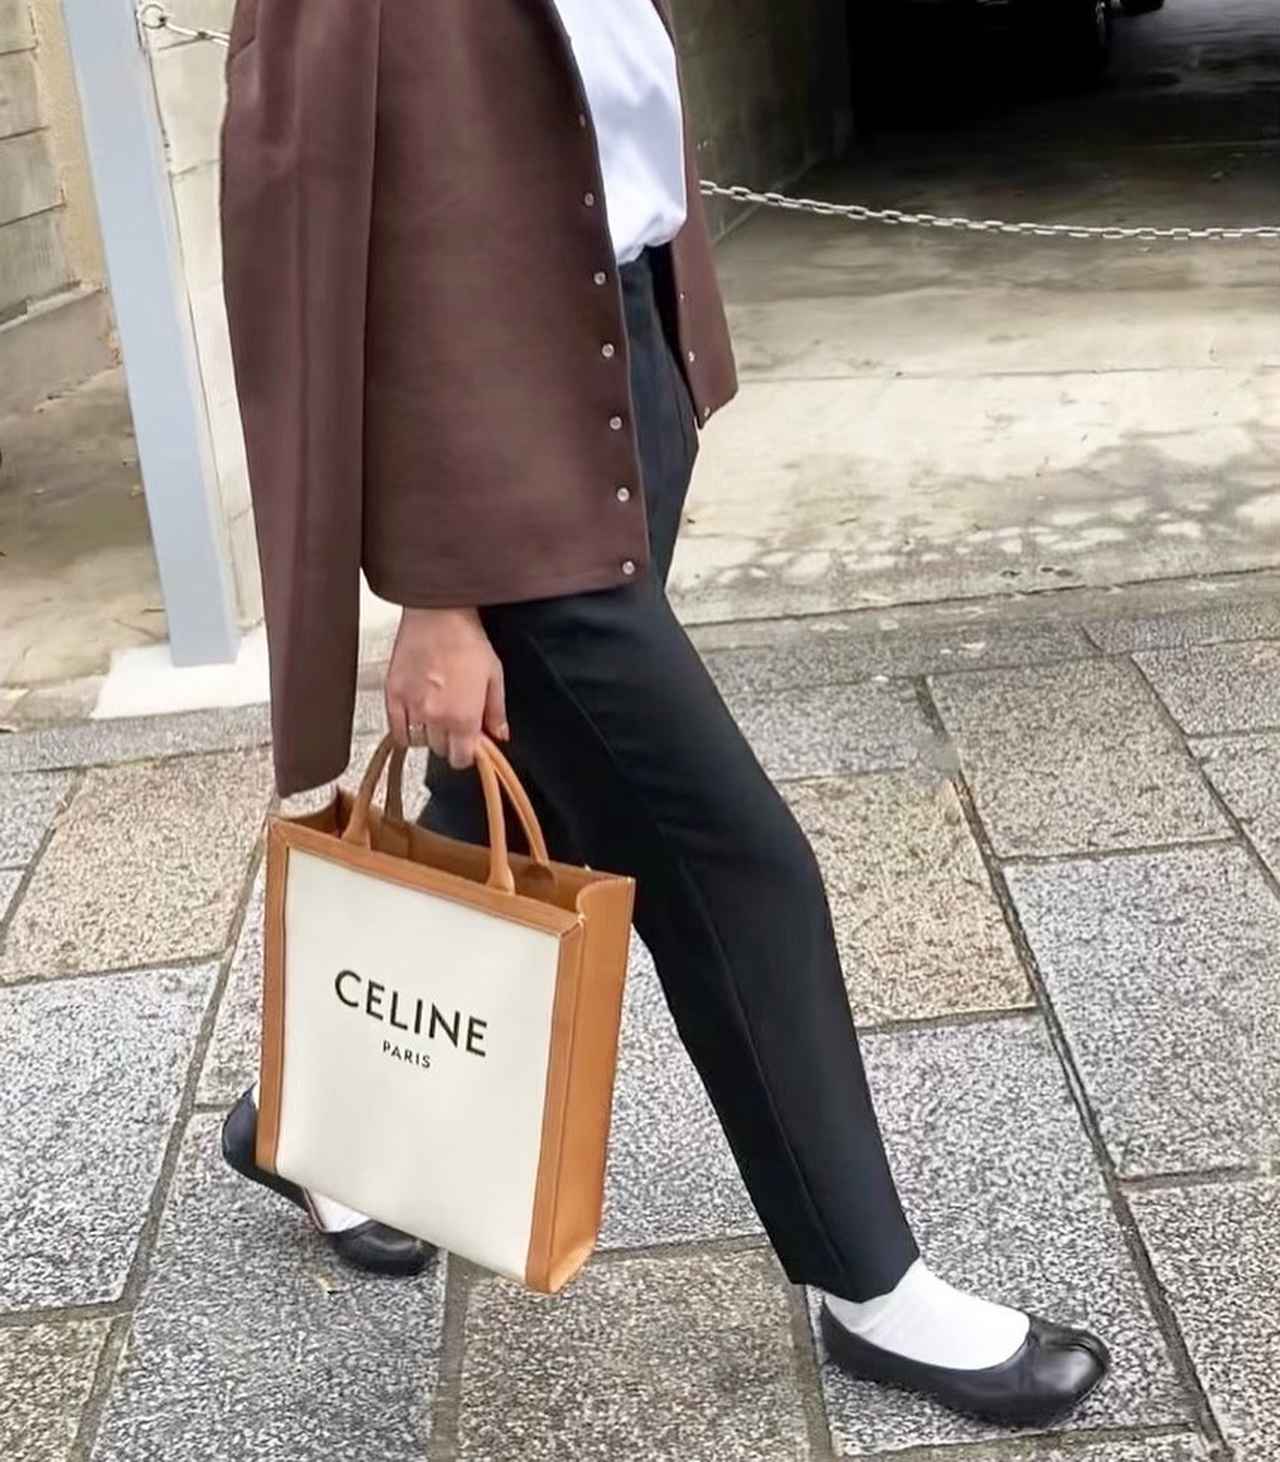 CELINEの“憧れバッグ”を使ったおしゃれなコーデ4選 - モデルプレス